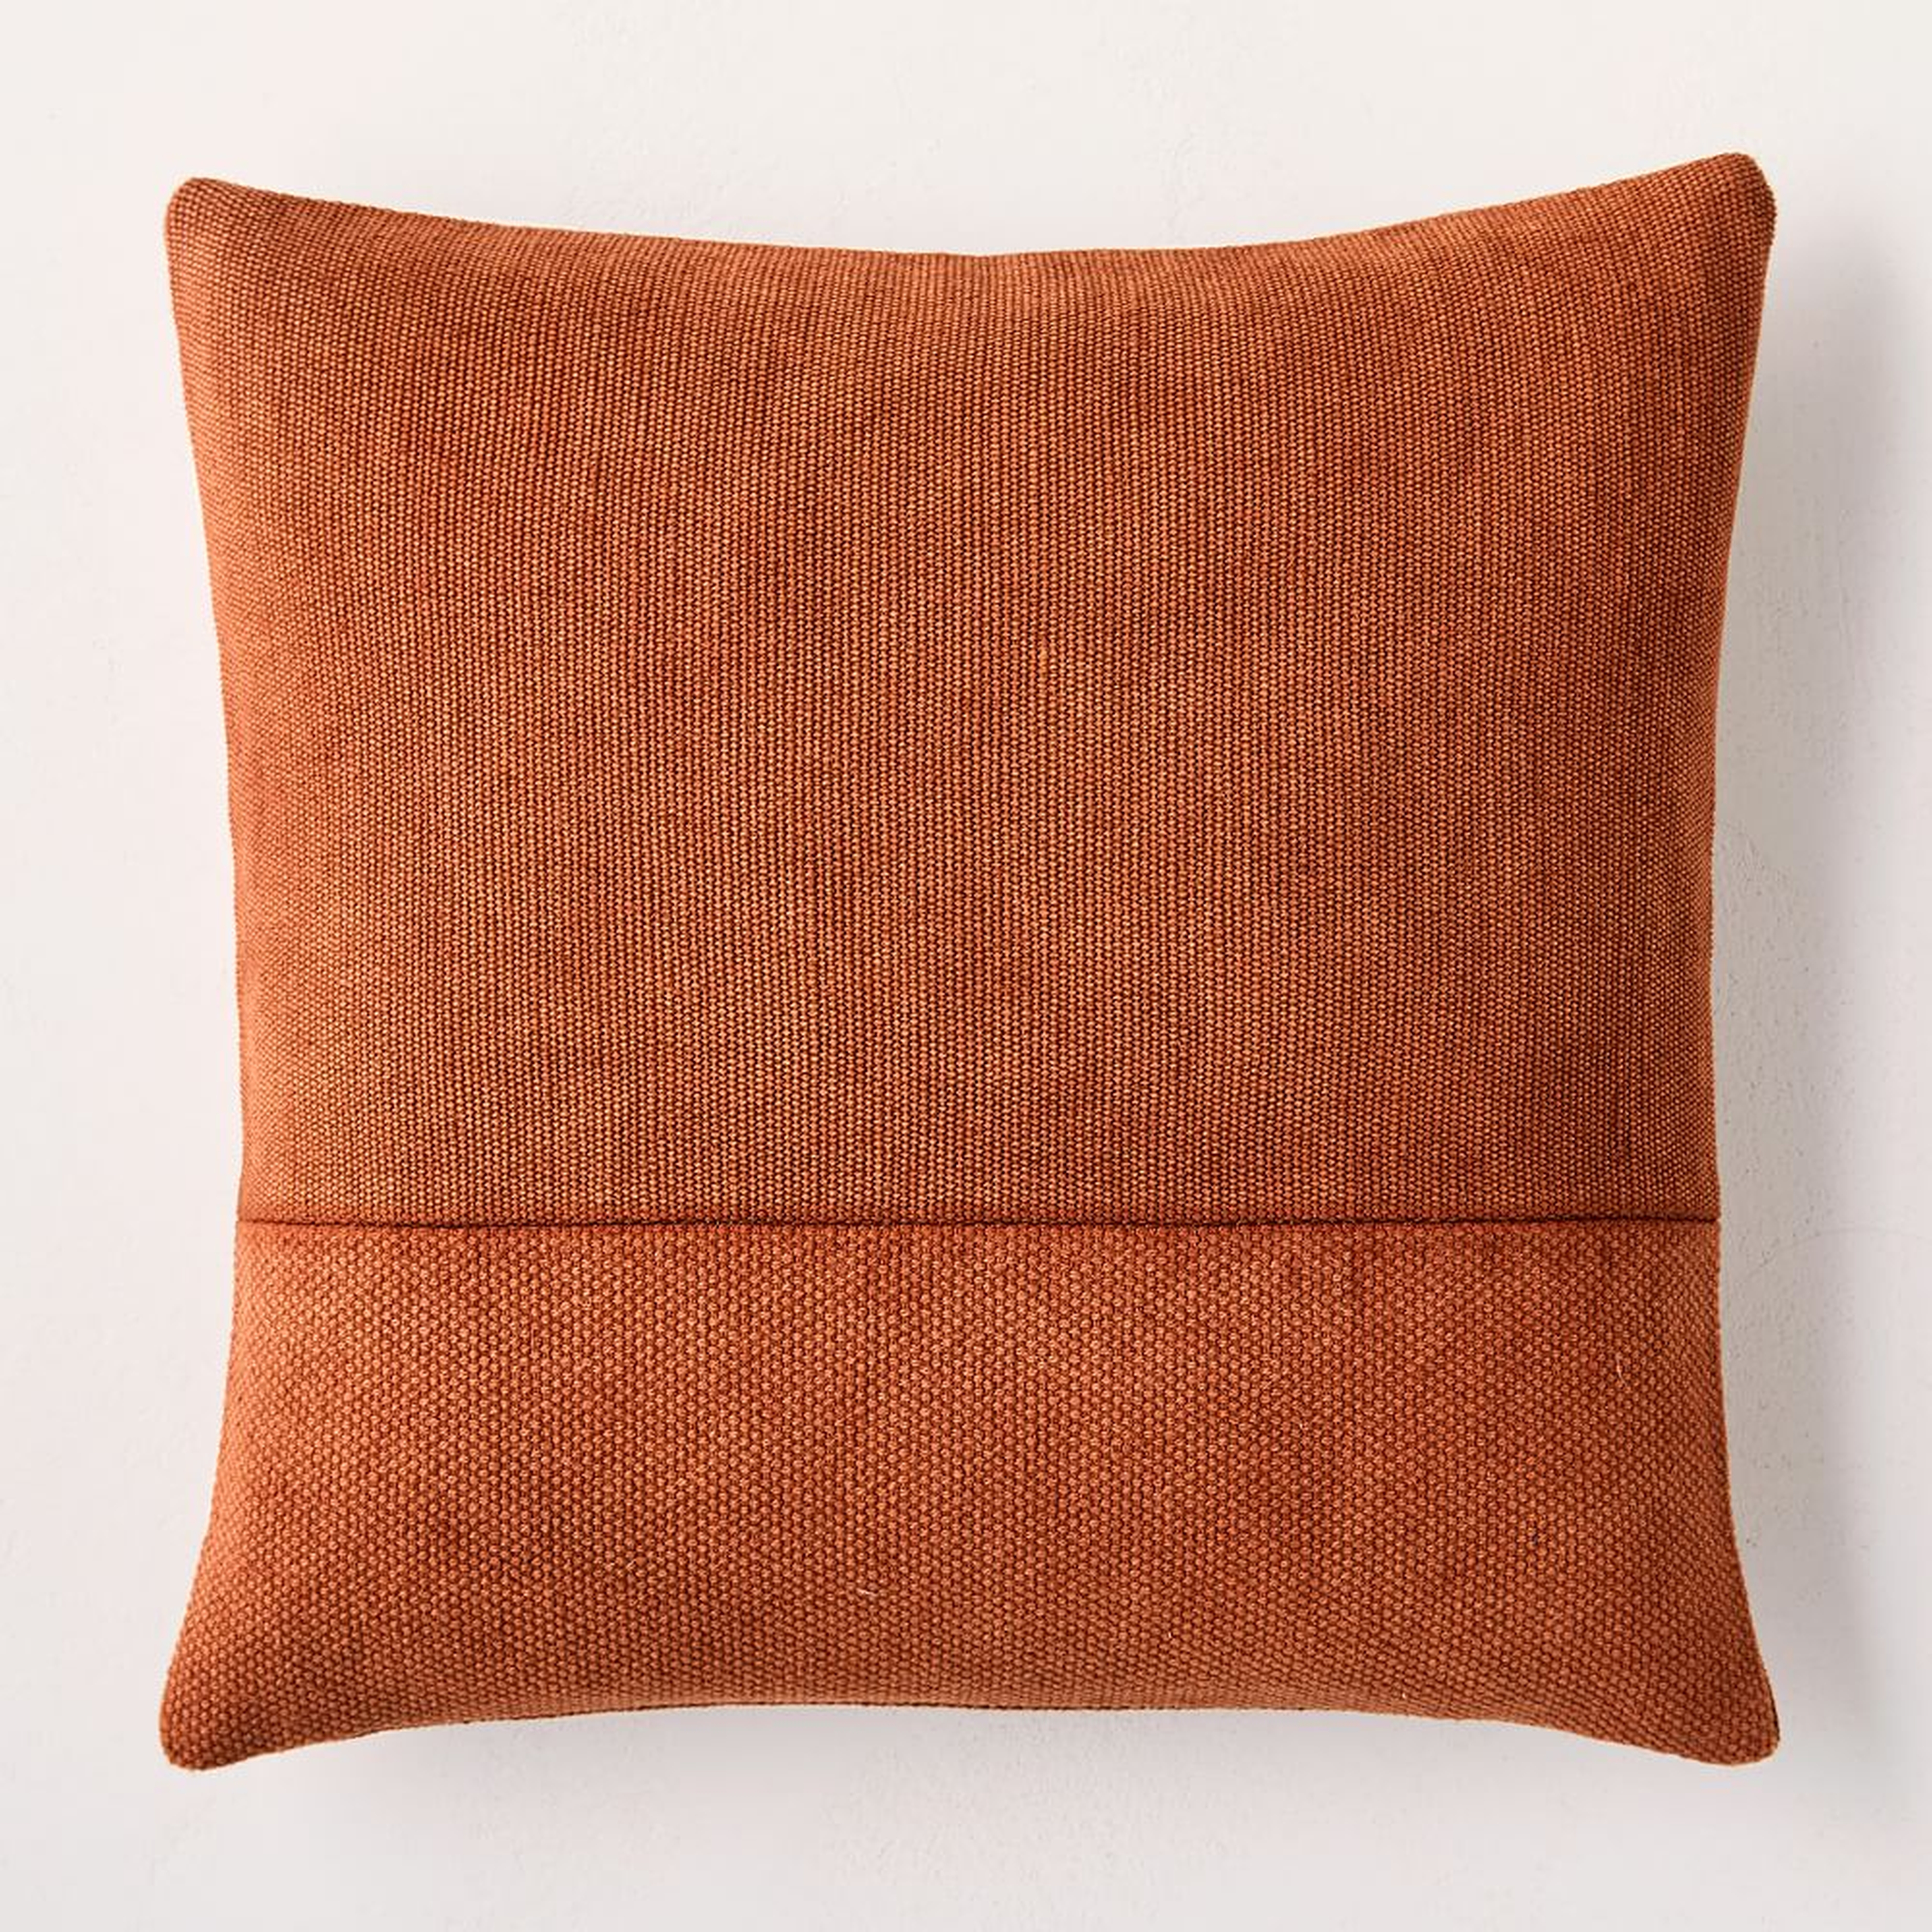 Cotton Canvas Pillow Cover, 18"x18", Copper - West Elm